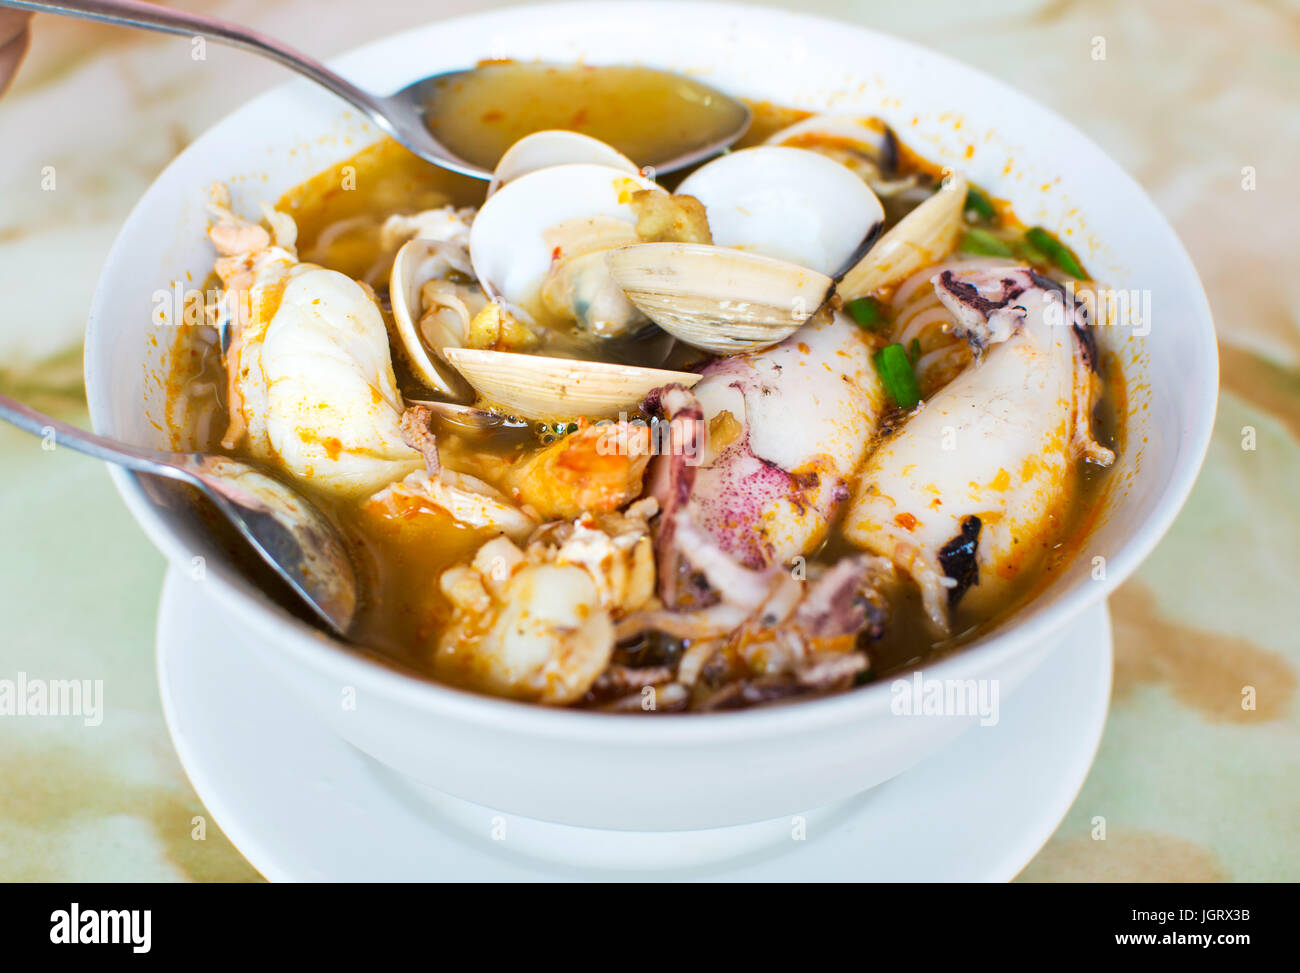 Fruits de mer, soupe Tom Yam Thai servi dans un bol blanc Banque D'Images